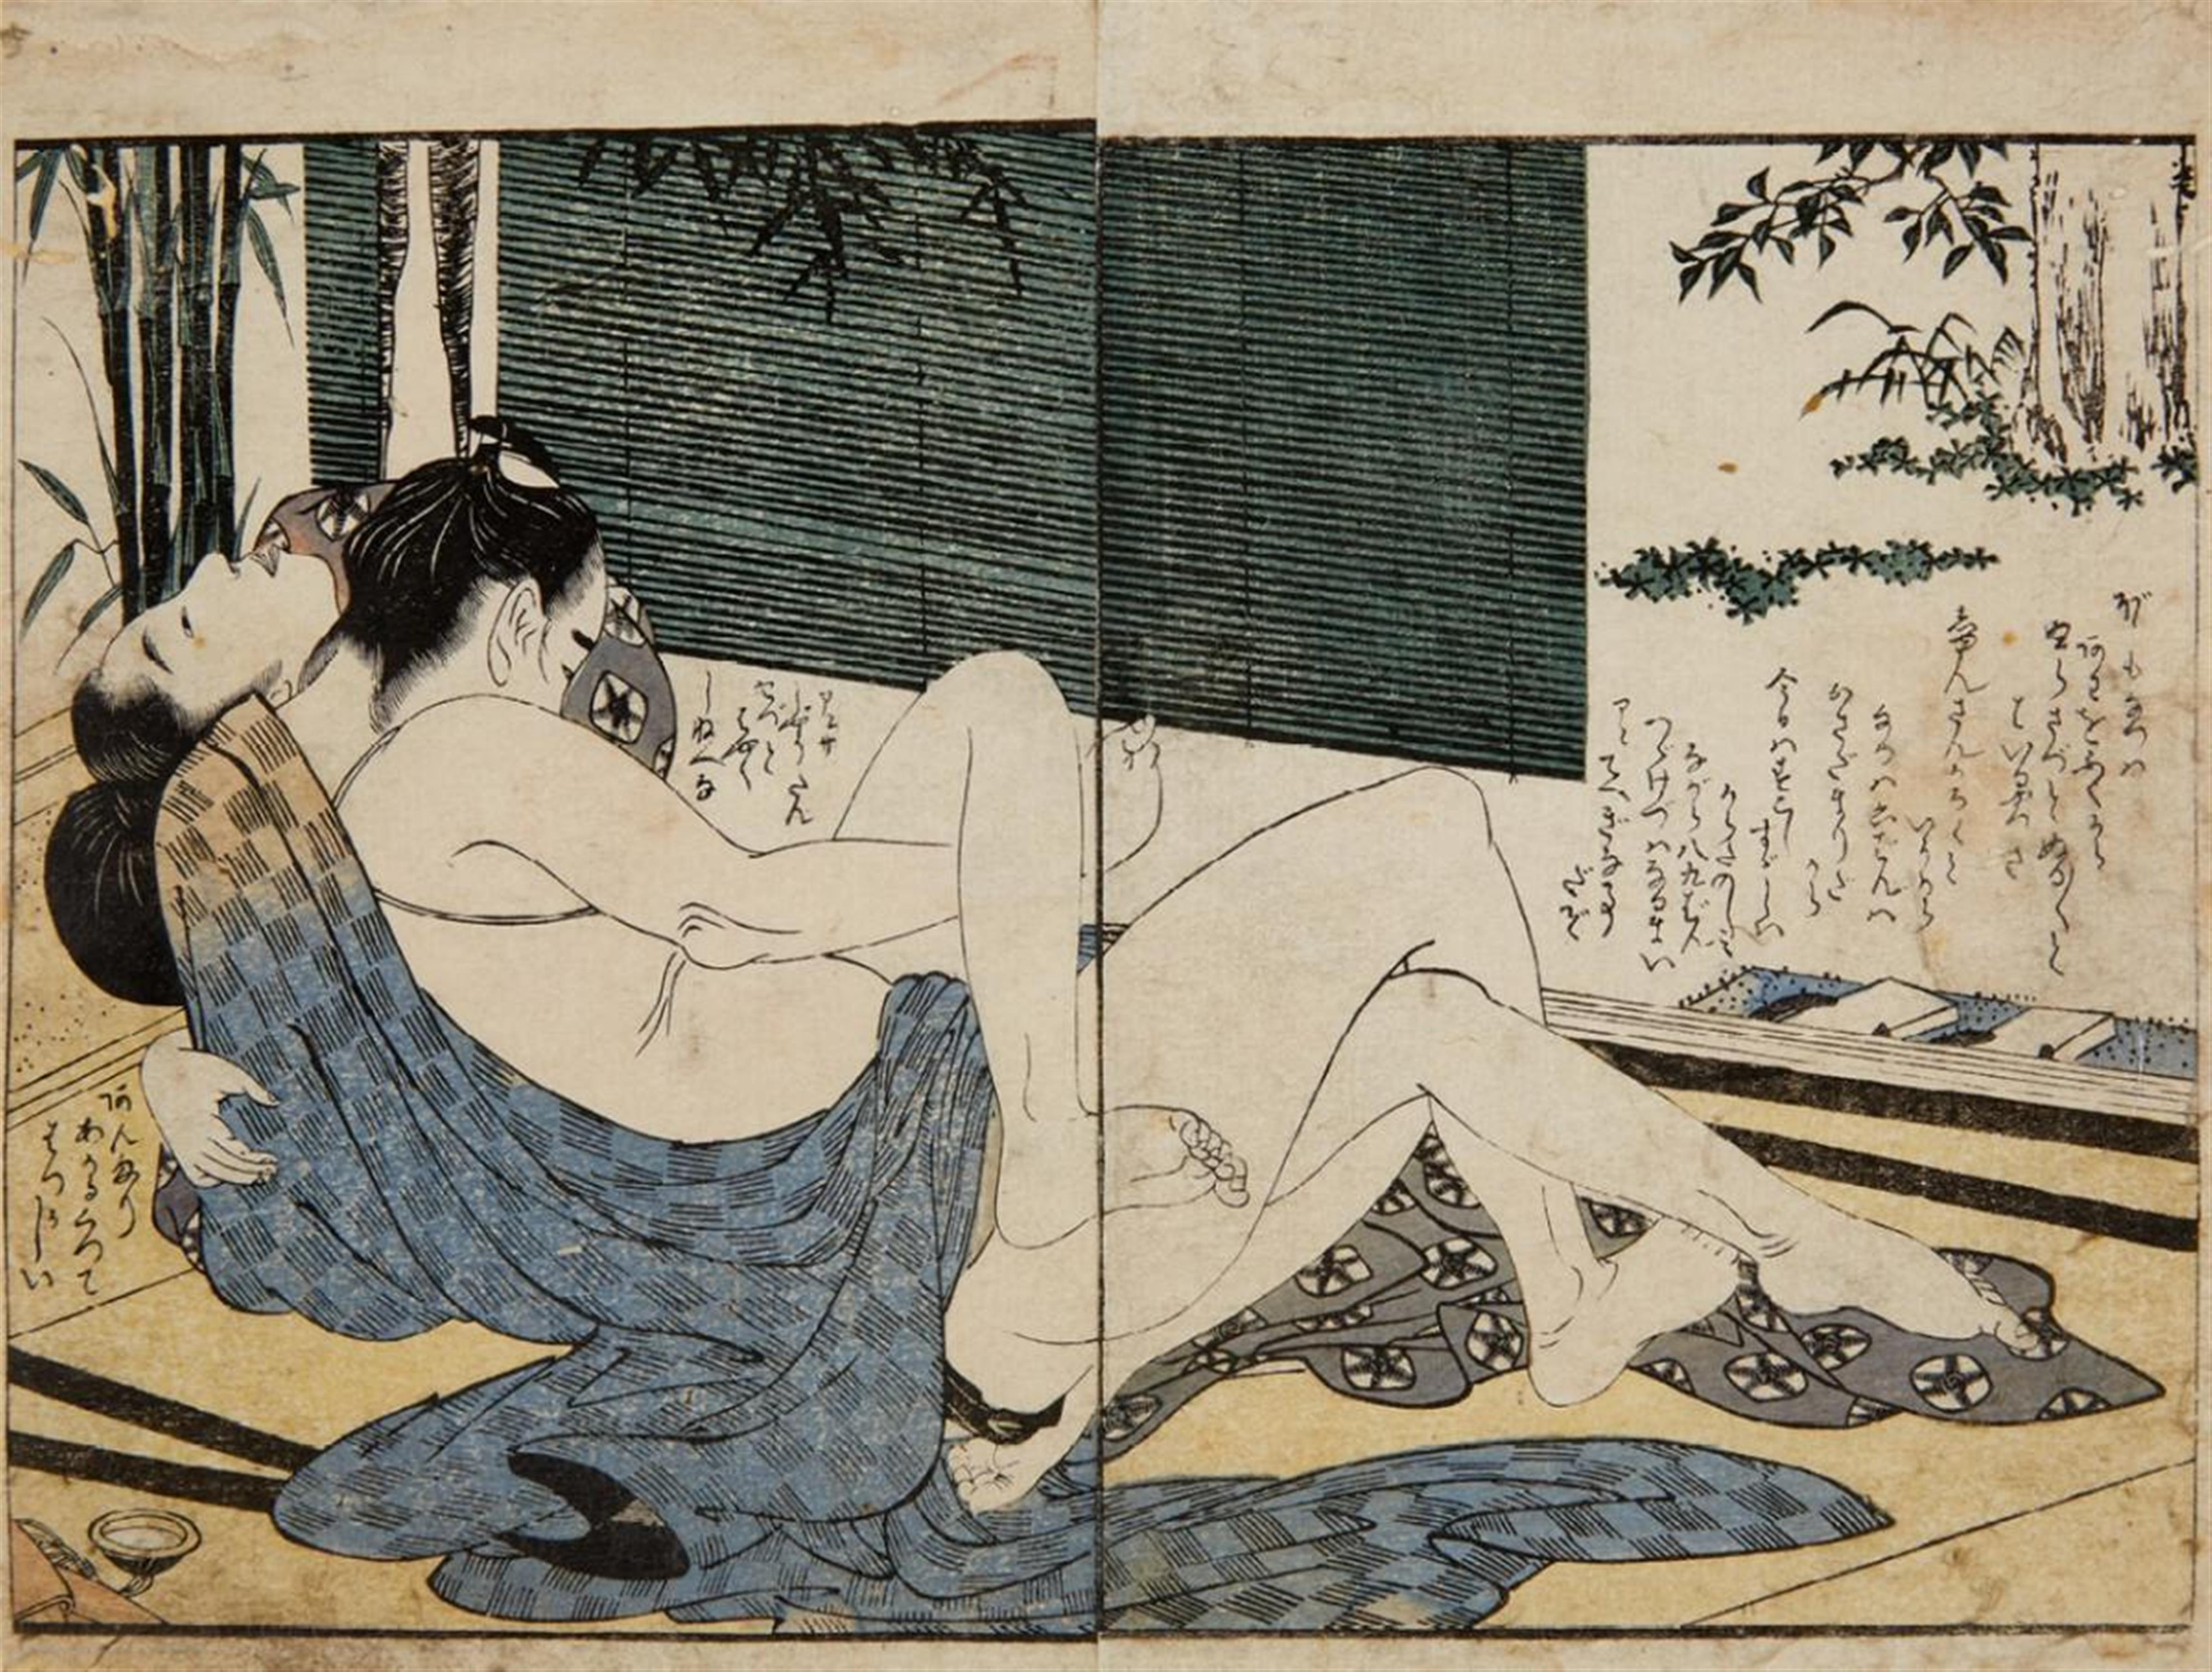 Kitagawa Utamaro
Various Artists - Kitagawa Utamaro (1753-1806) and various artists of the 18th and 19th century - image-1